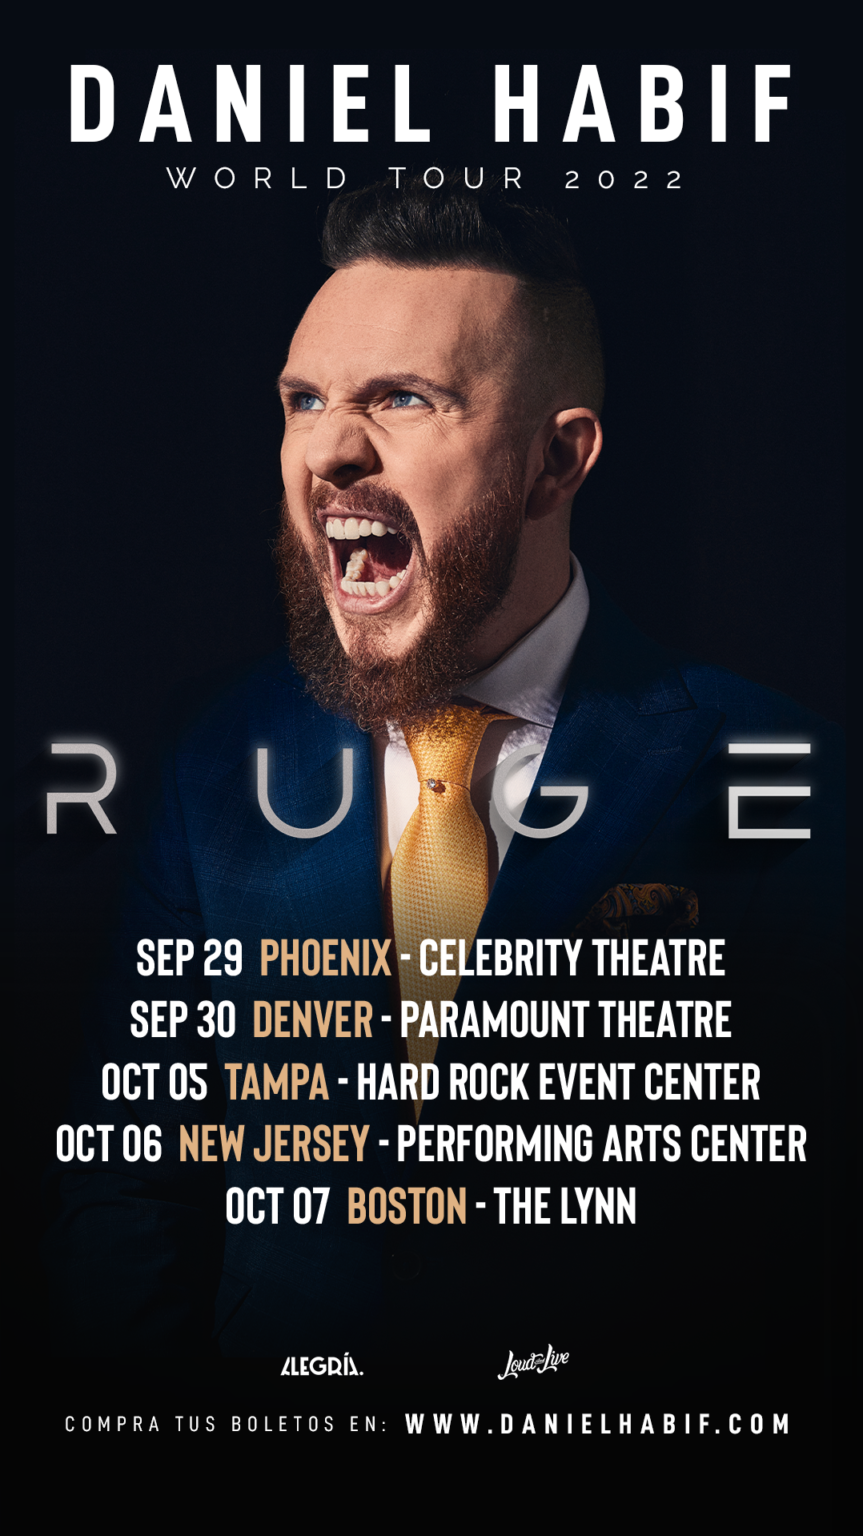 DANIEL HABIF continúa su gira por Estados Unidos “Ruge USA Tour” Wow